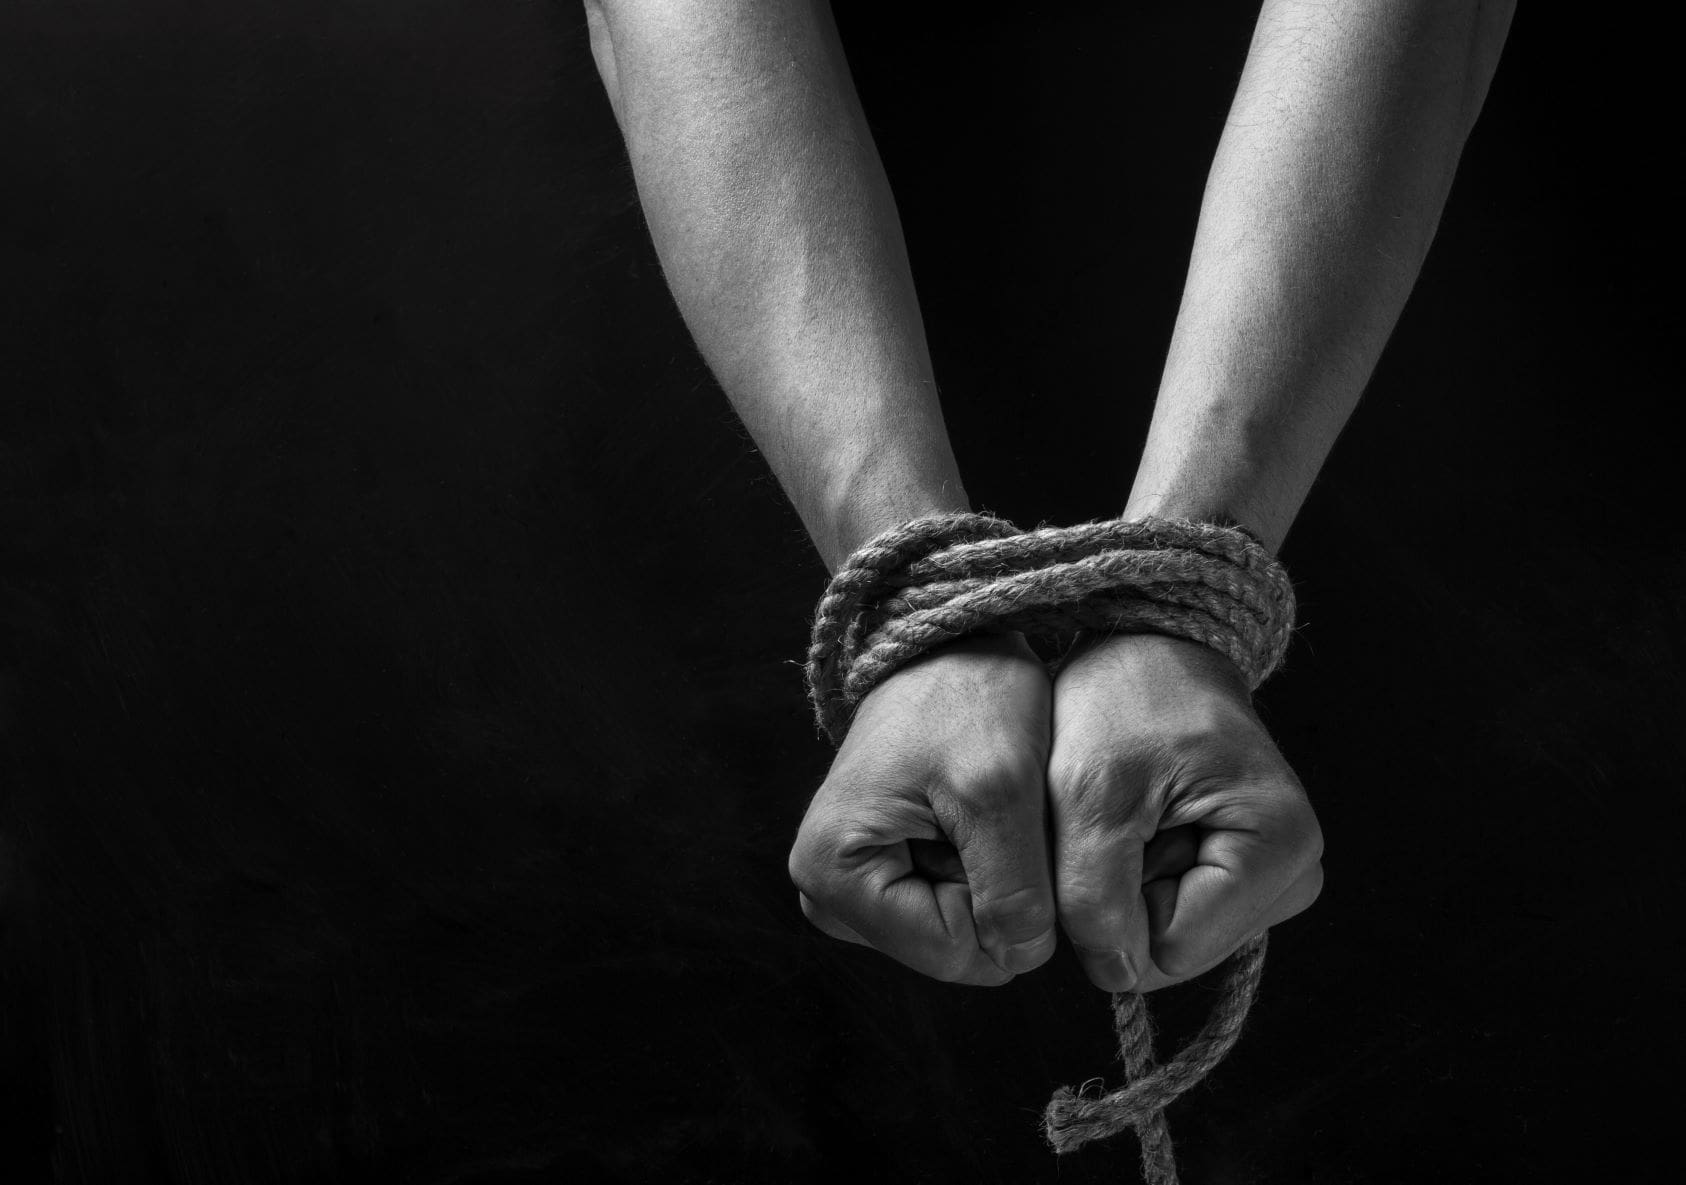 La realidad de la esclavitud moderna en el Reino Unido y cómo erradicarla